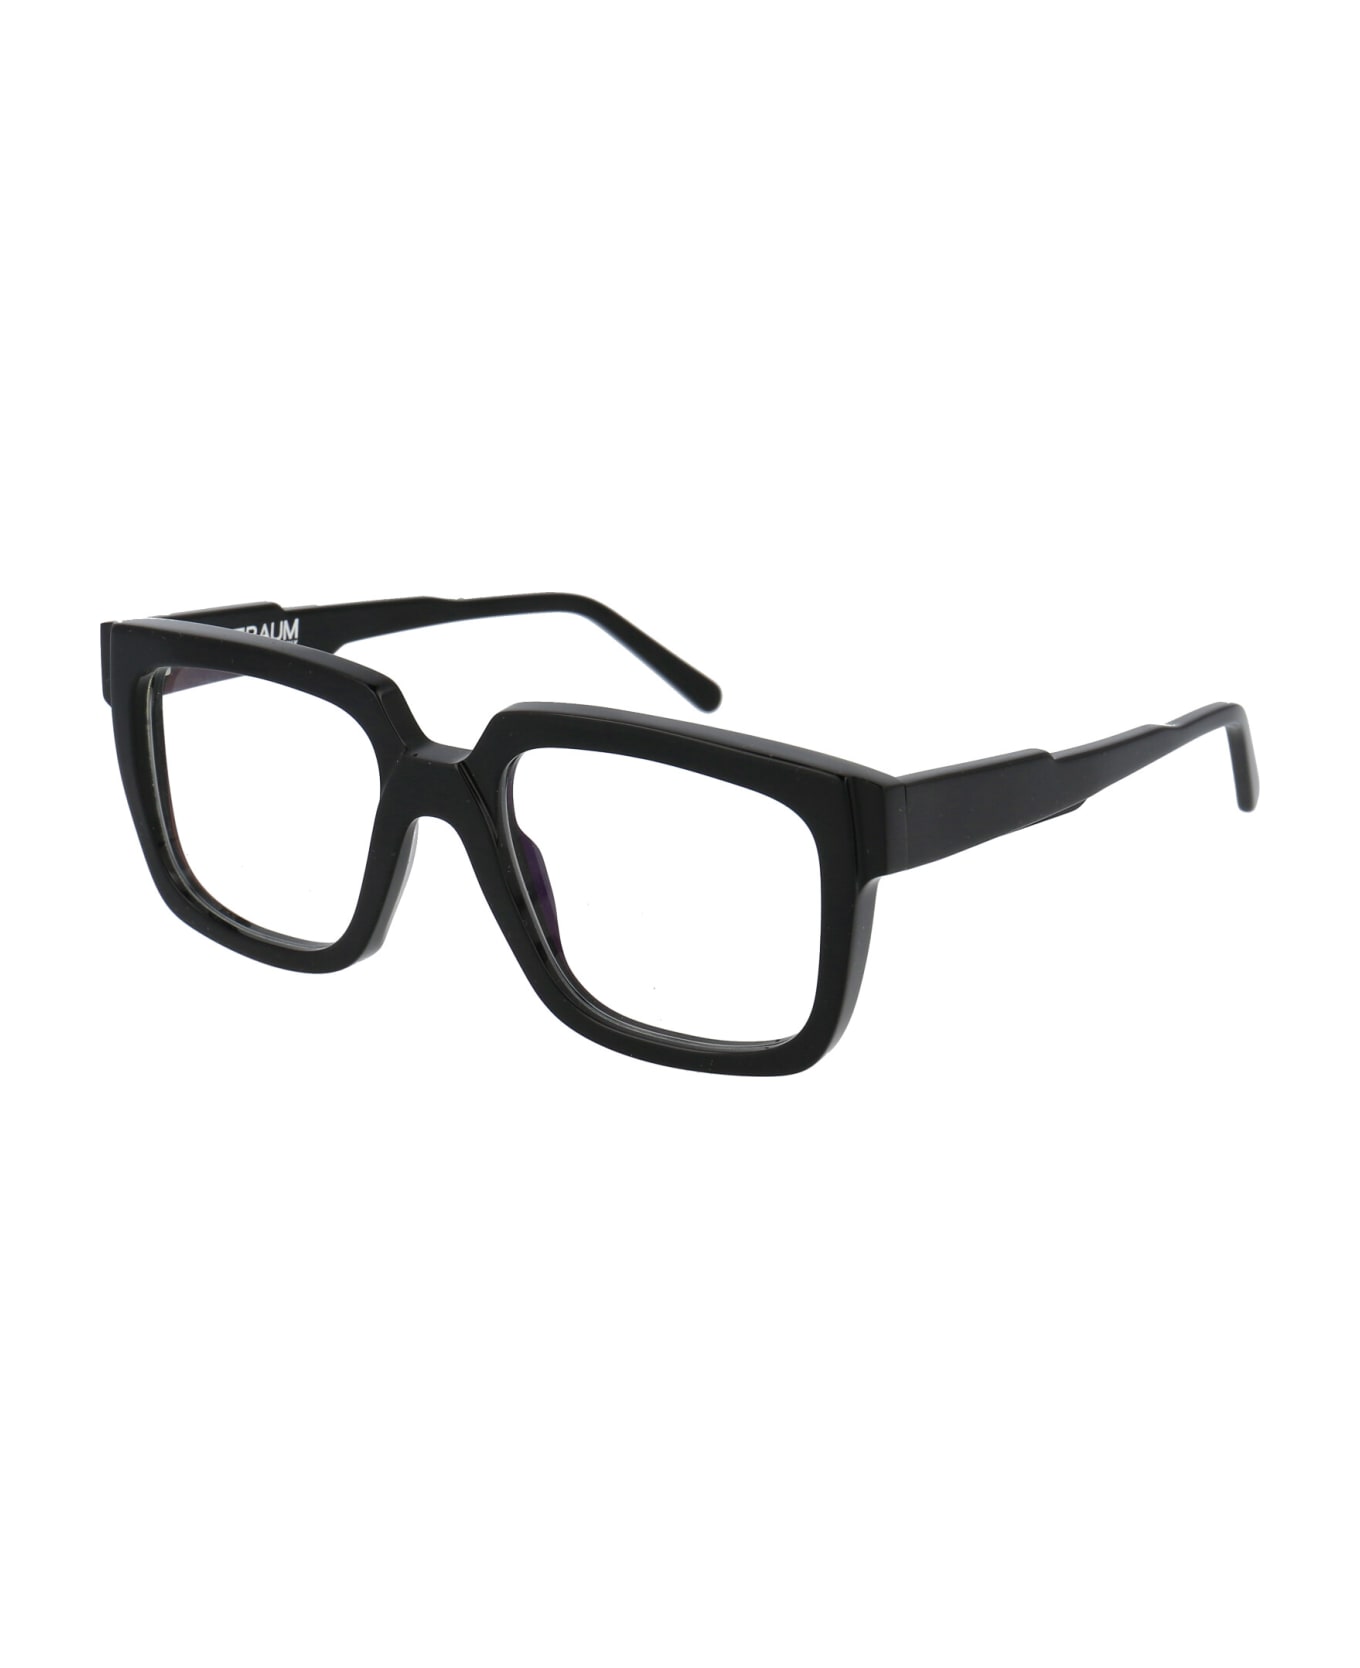 Kuboraum Maske K3 Glasses - BS BLACK